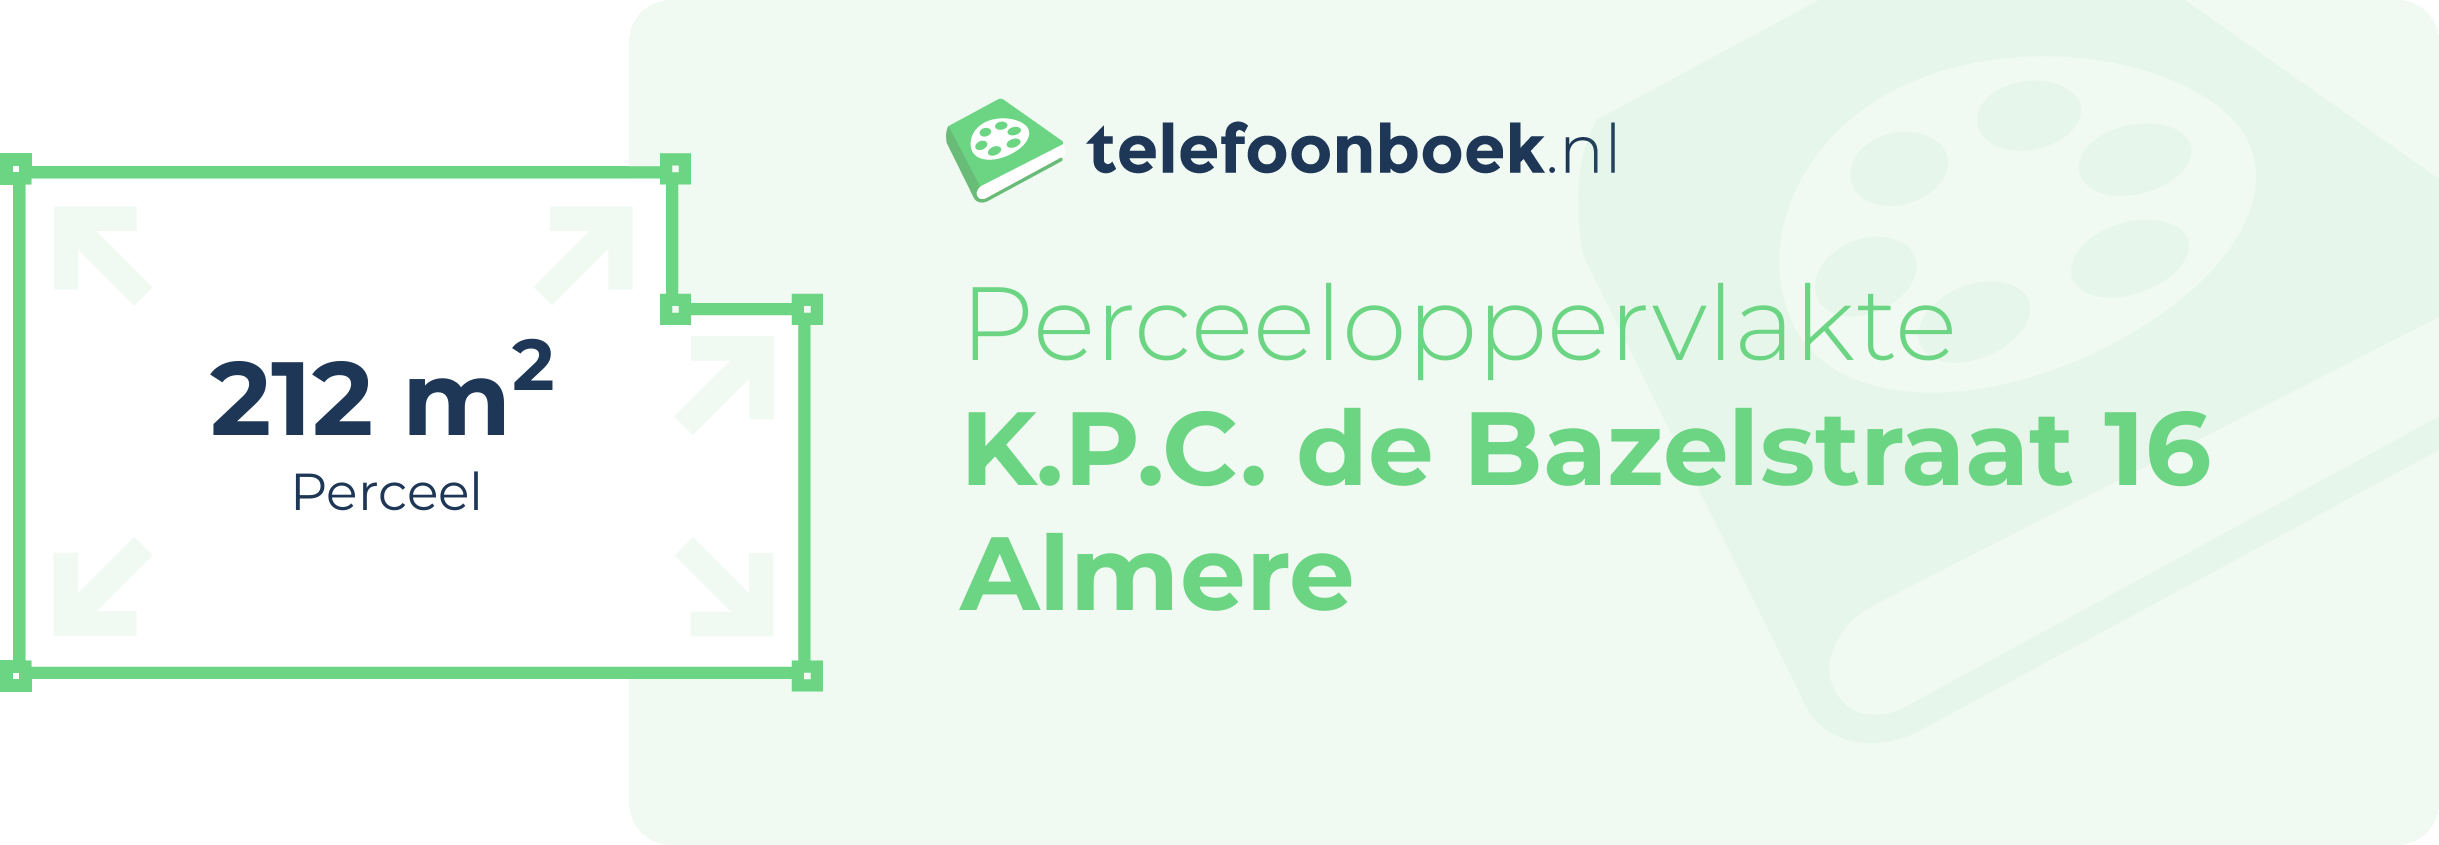 Perceeloppervlakte K.P.C. De Bazelstraat 16 Almere